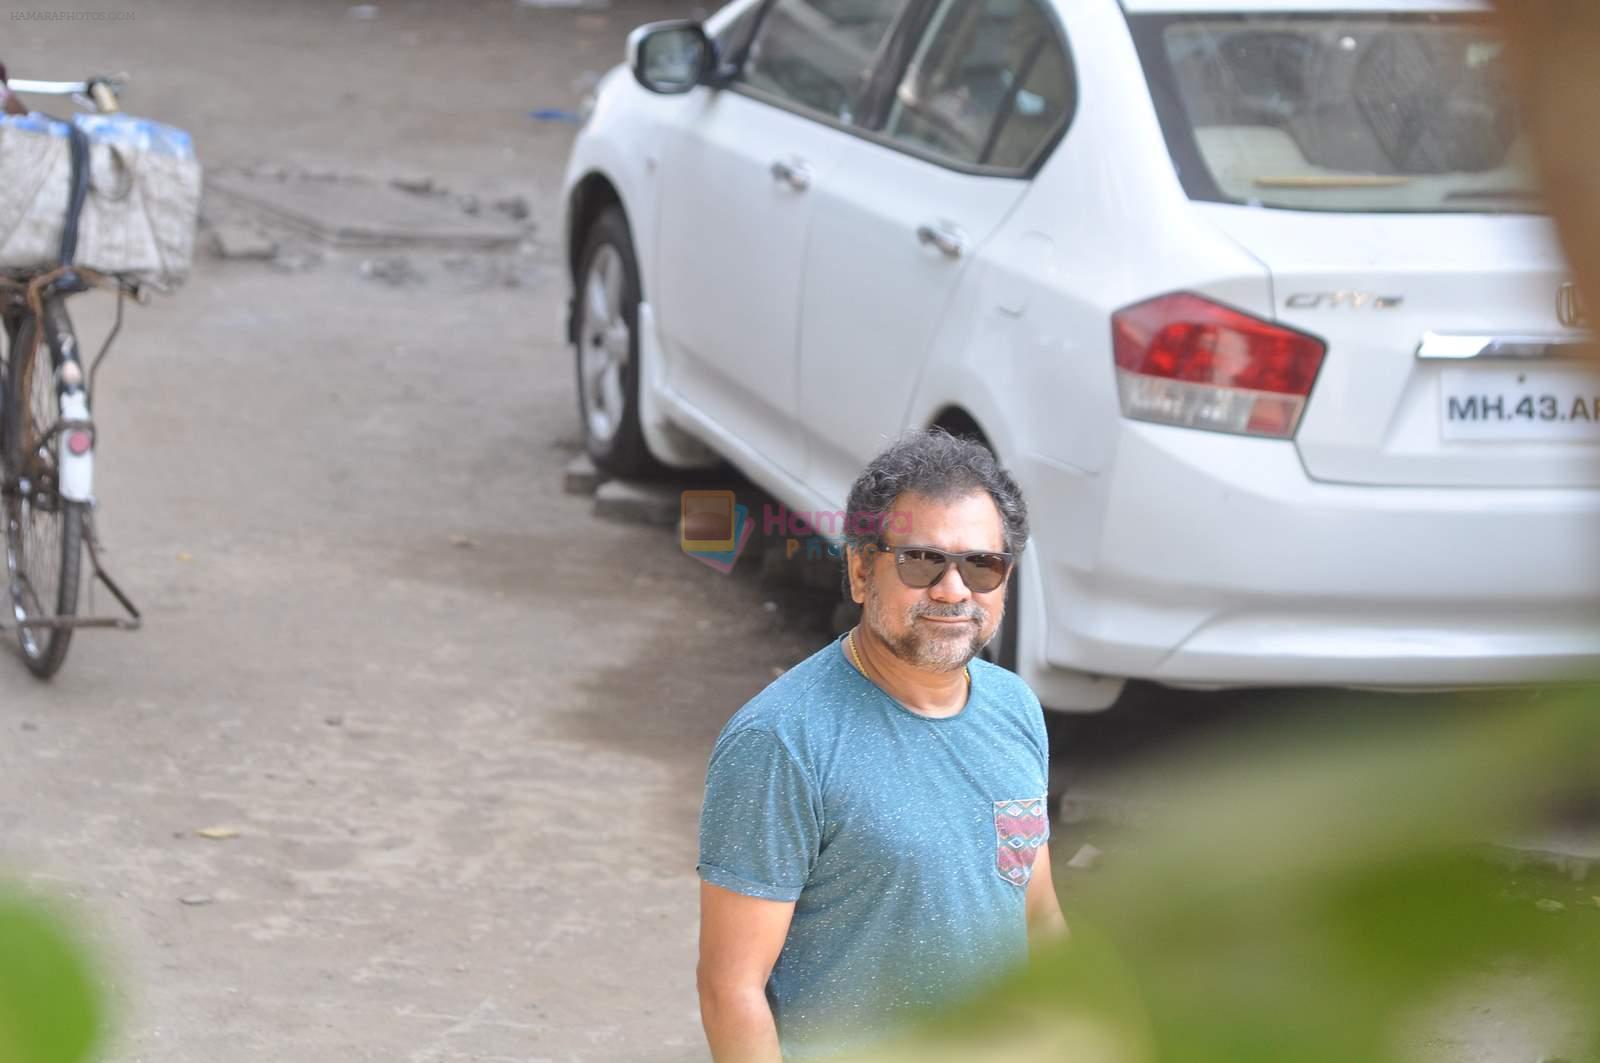 at Salman's House on 7th May 2015